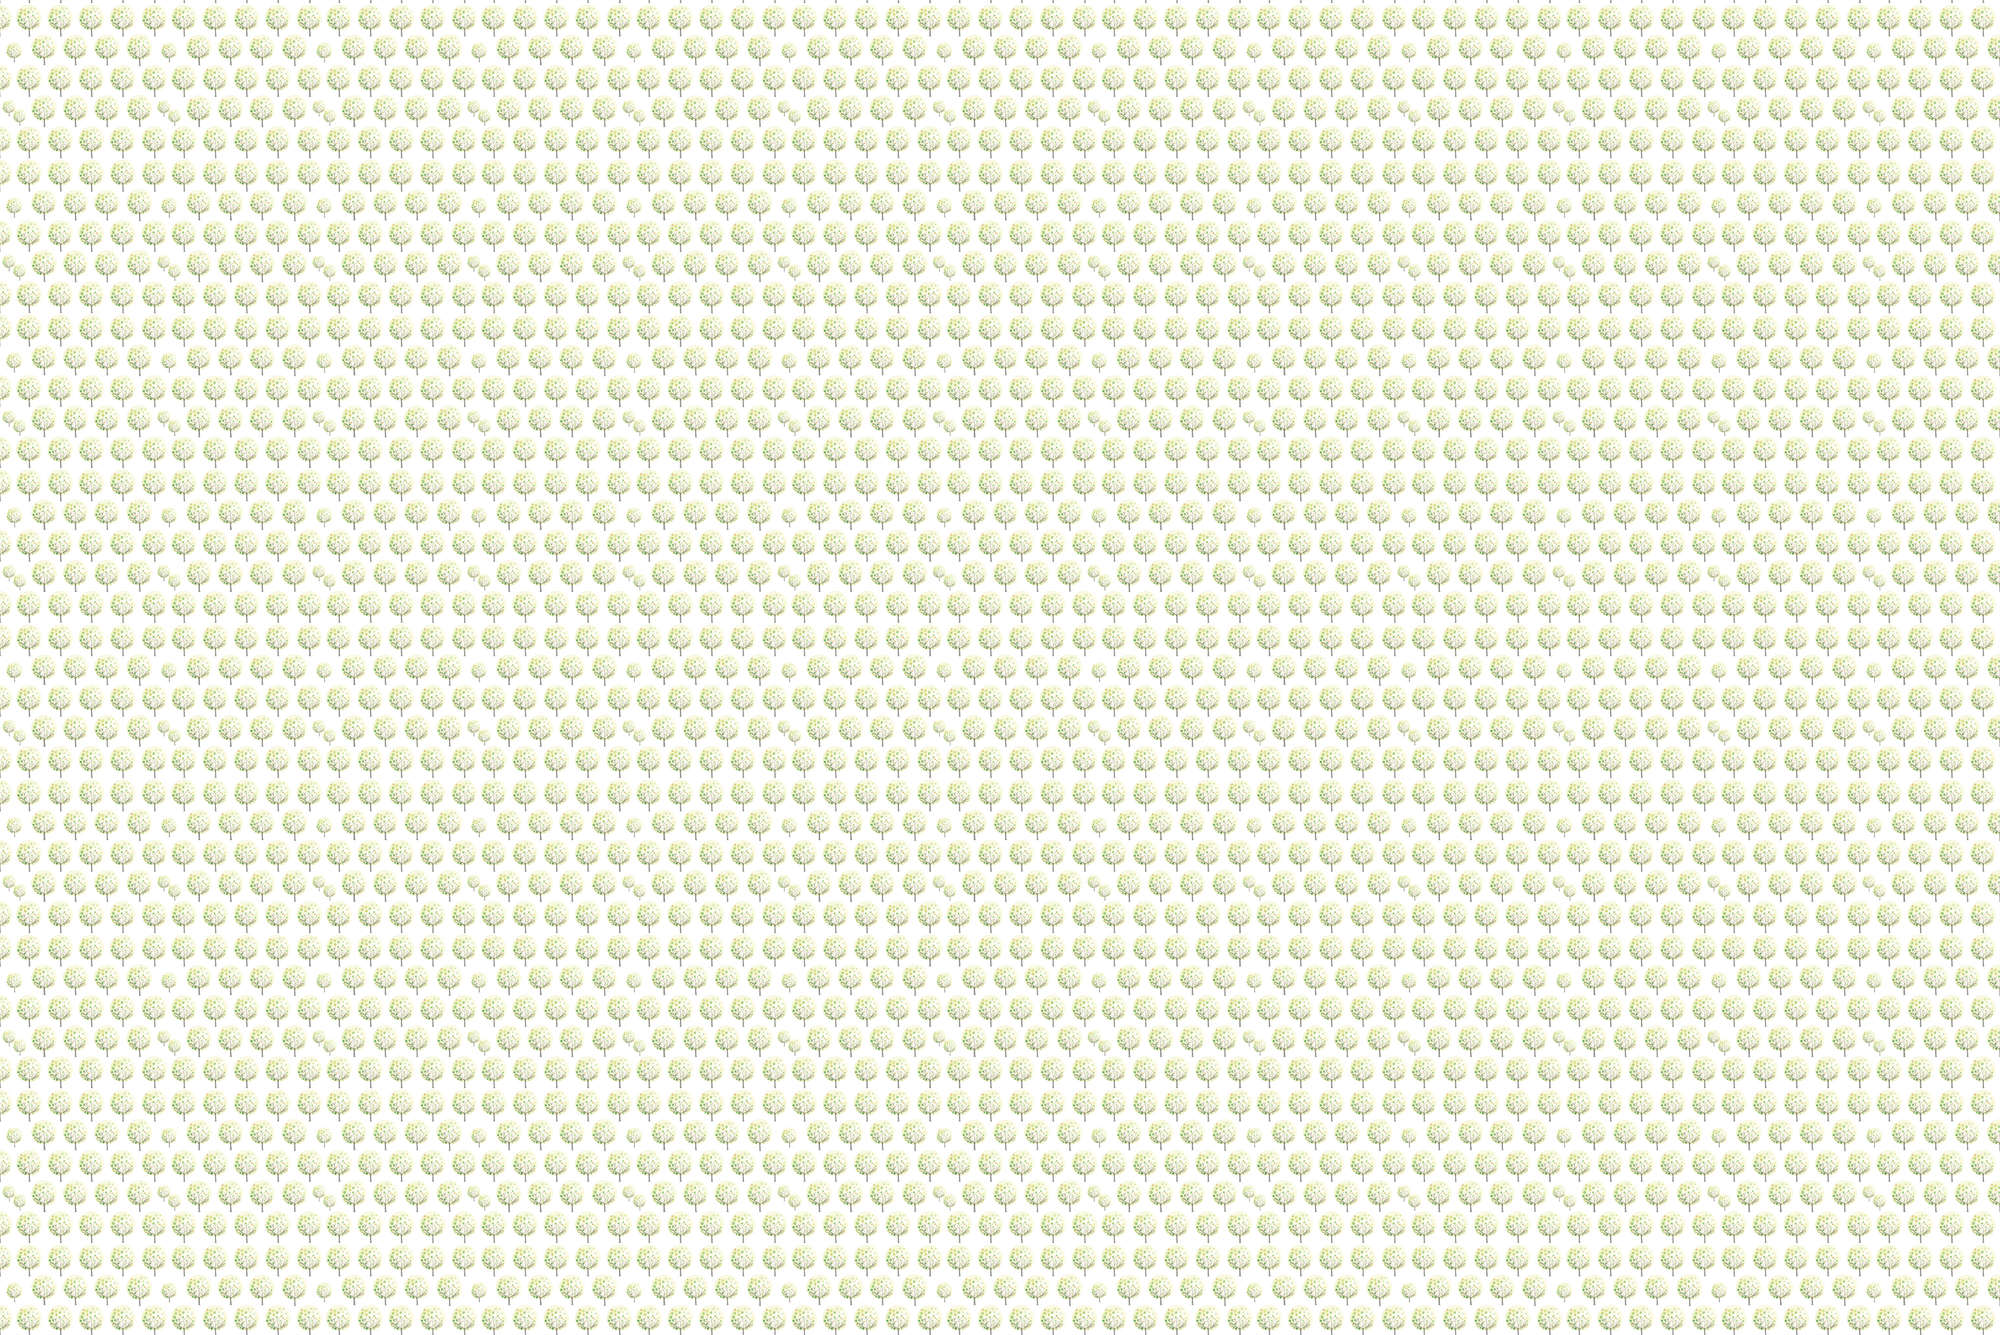             Design Behang Bospatroon in Groen op Witte Achtergrond op Matte Gladde Vliesdoek
        